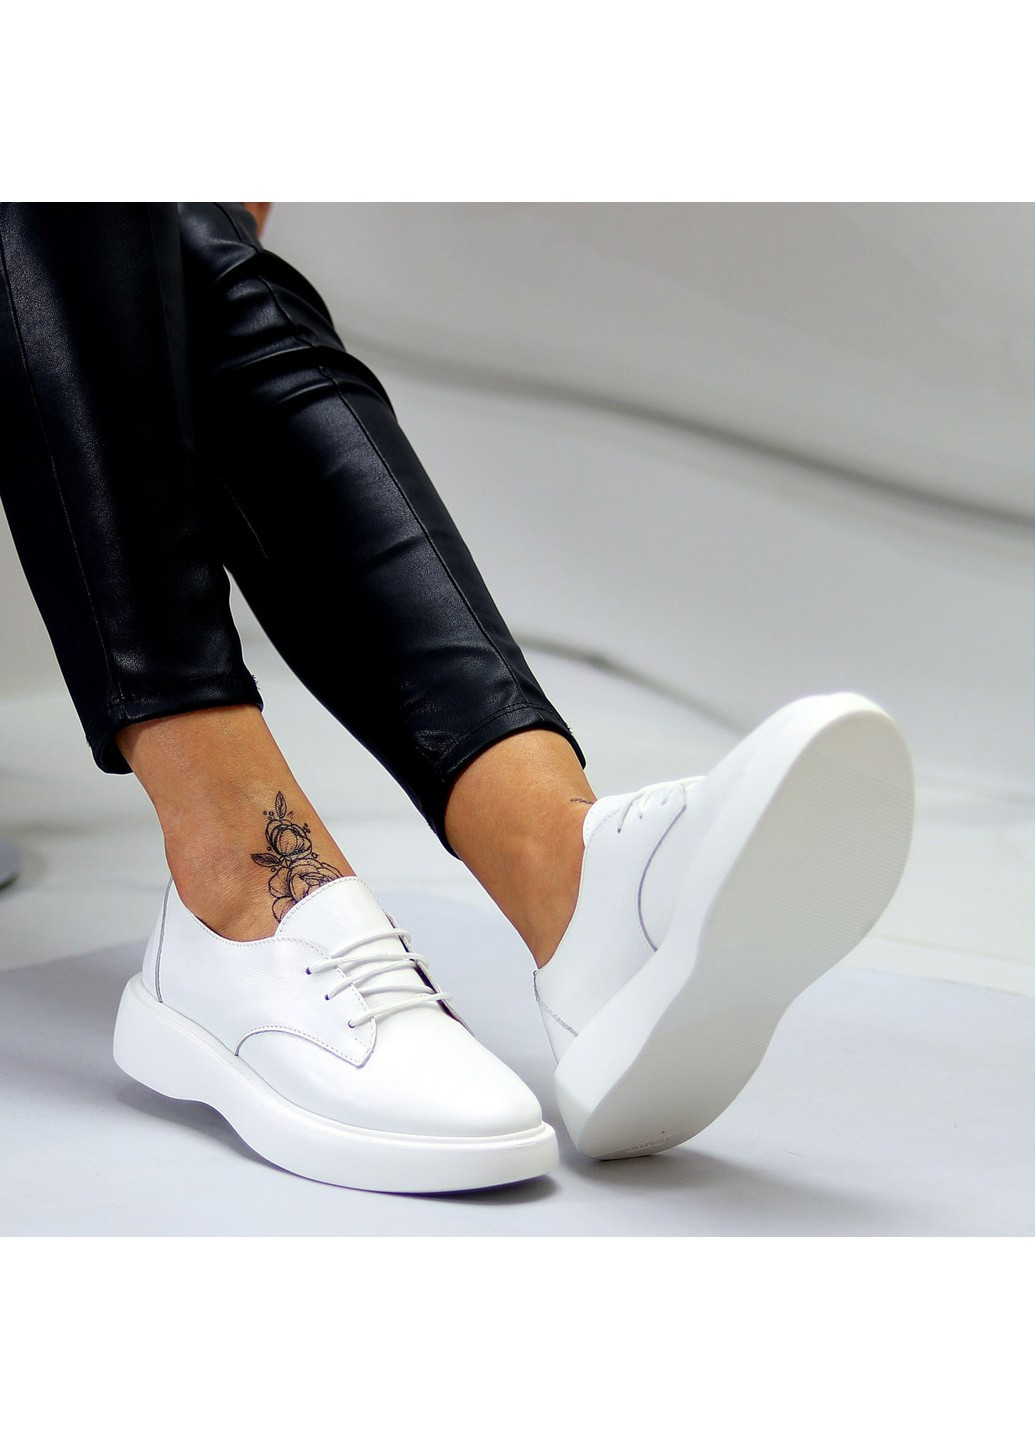 Туфли женские на шнуровке белые из натуральной кожи Melasva на низком каблуке